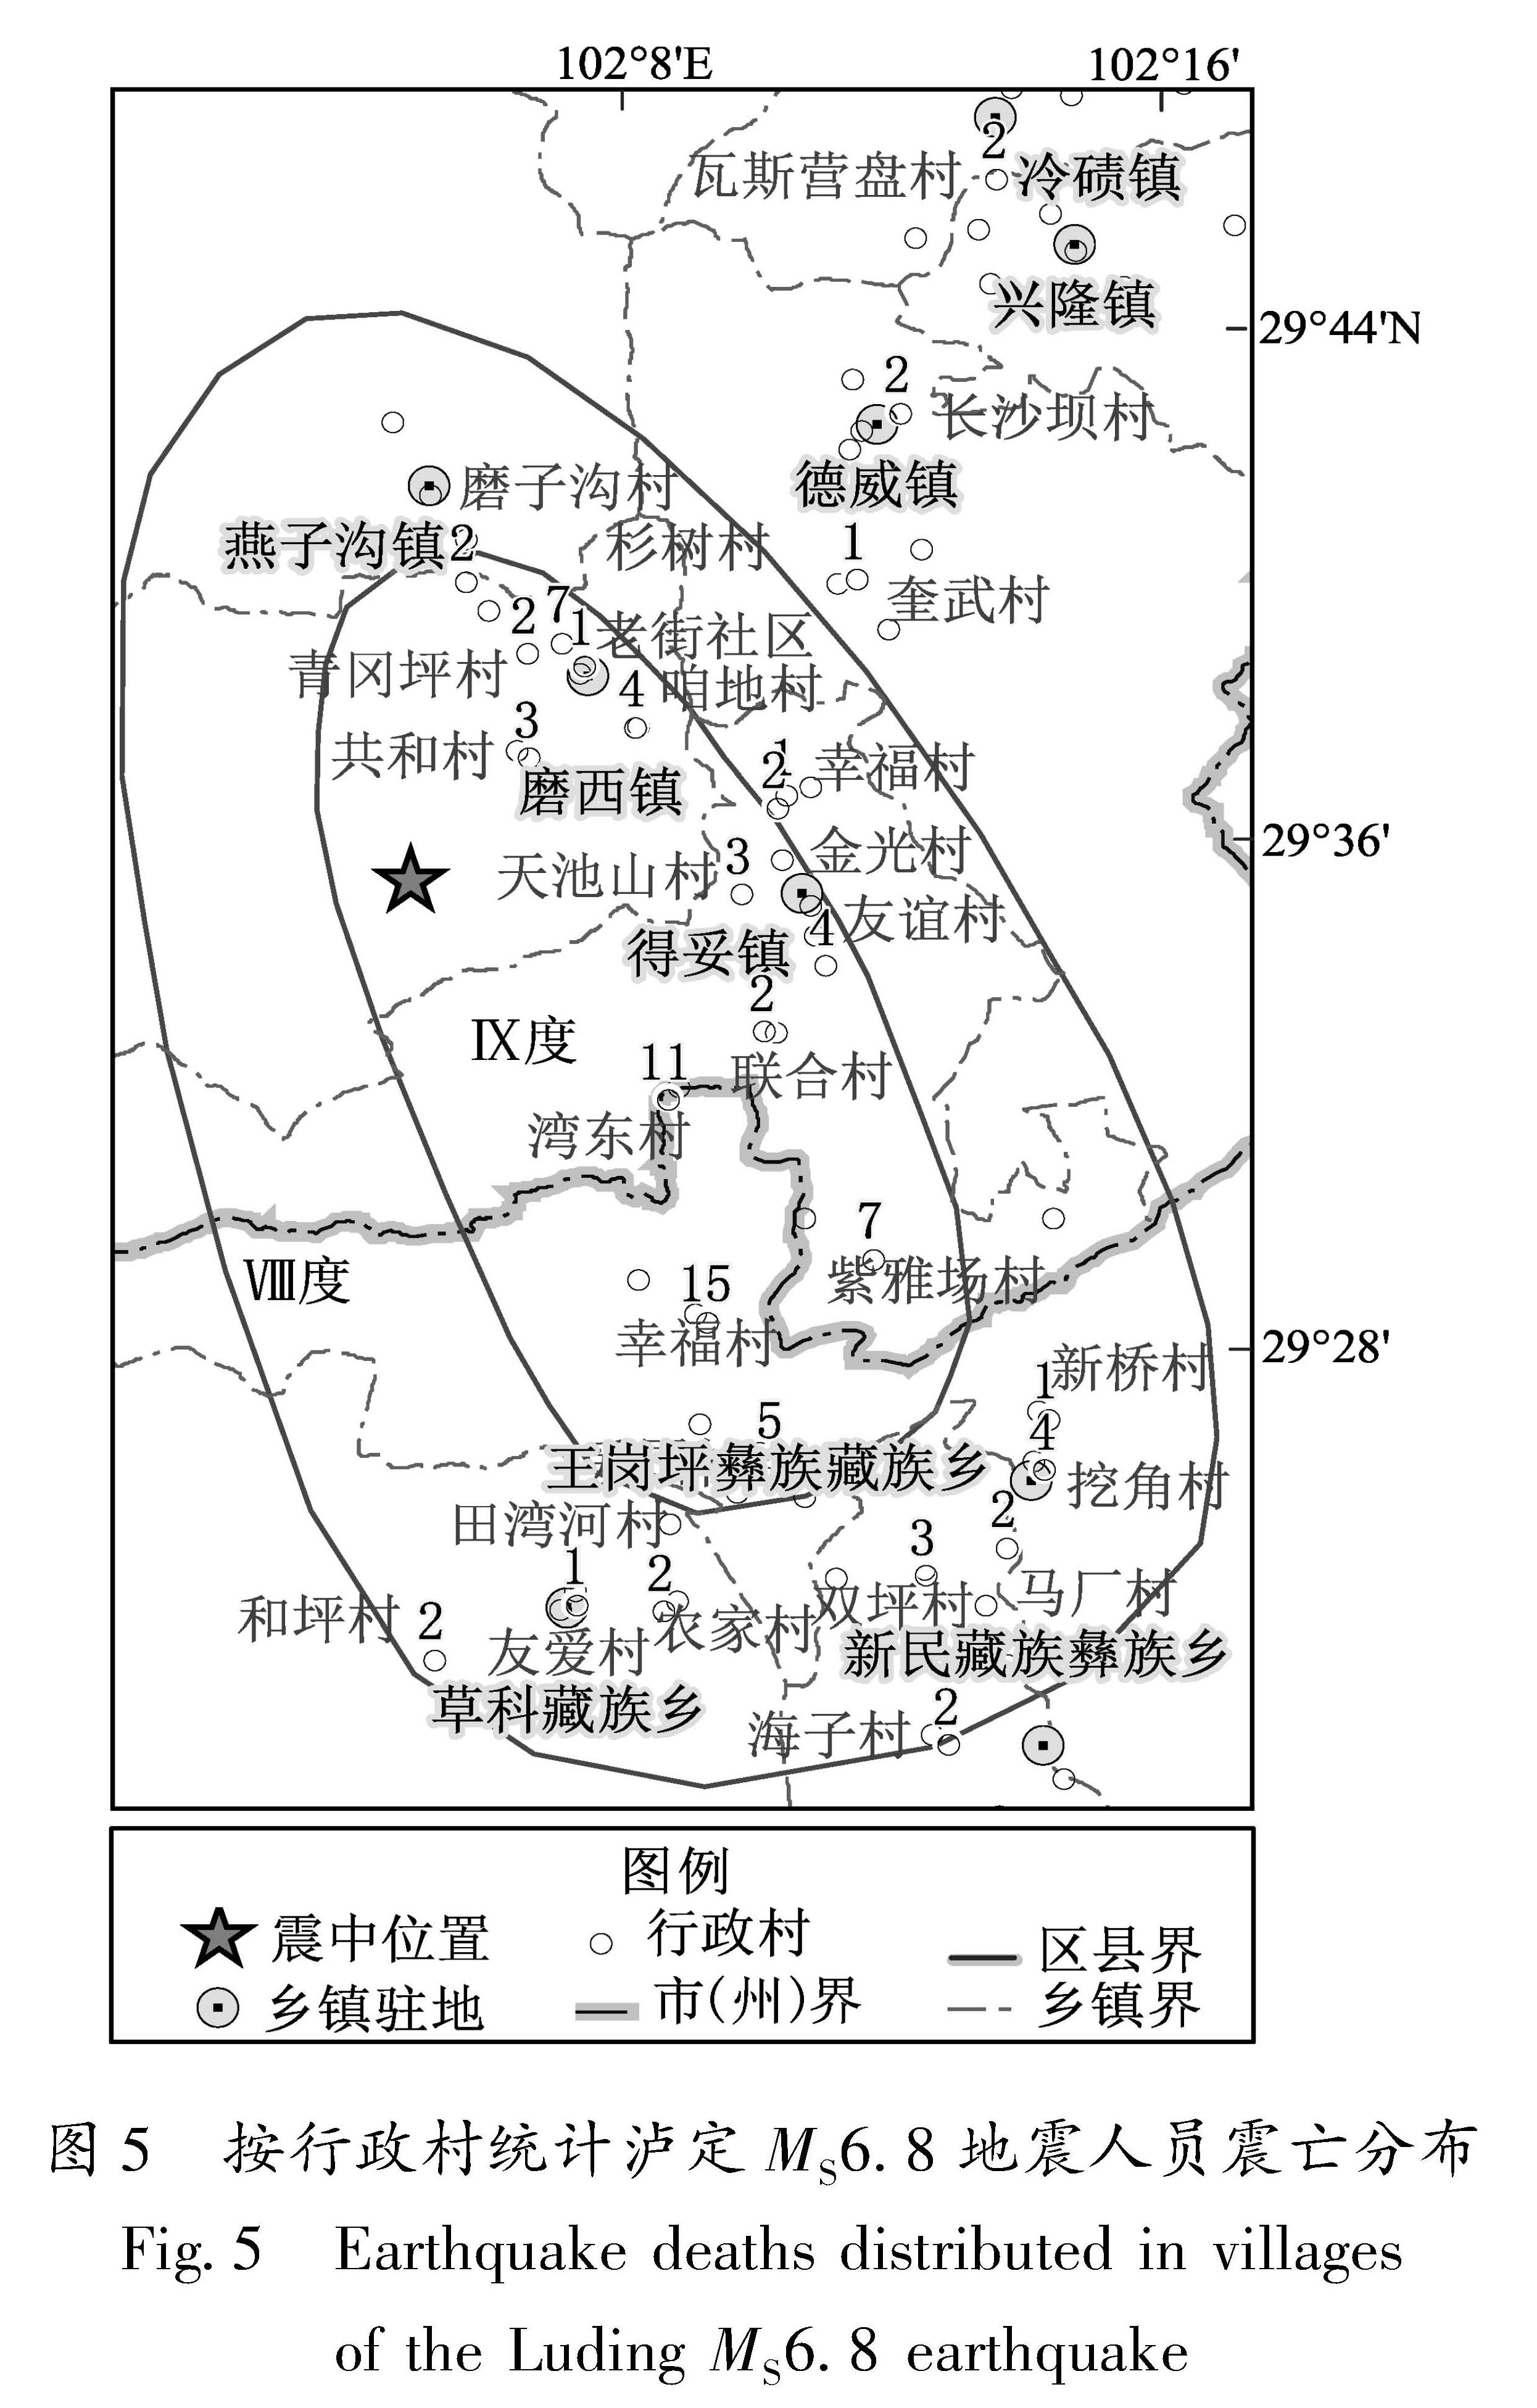 图5 按行政村统计泸定MS6.8地震人员震亡分布<br/>Fig.5 Earthquake deaths distributed in villages of the Luding MS6.8 earthquake